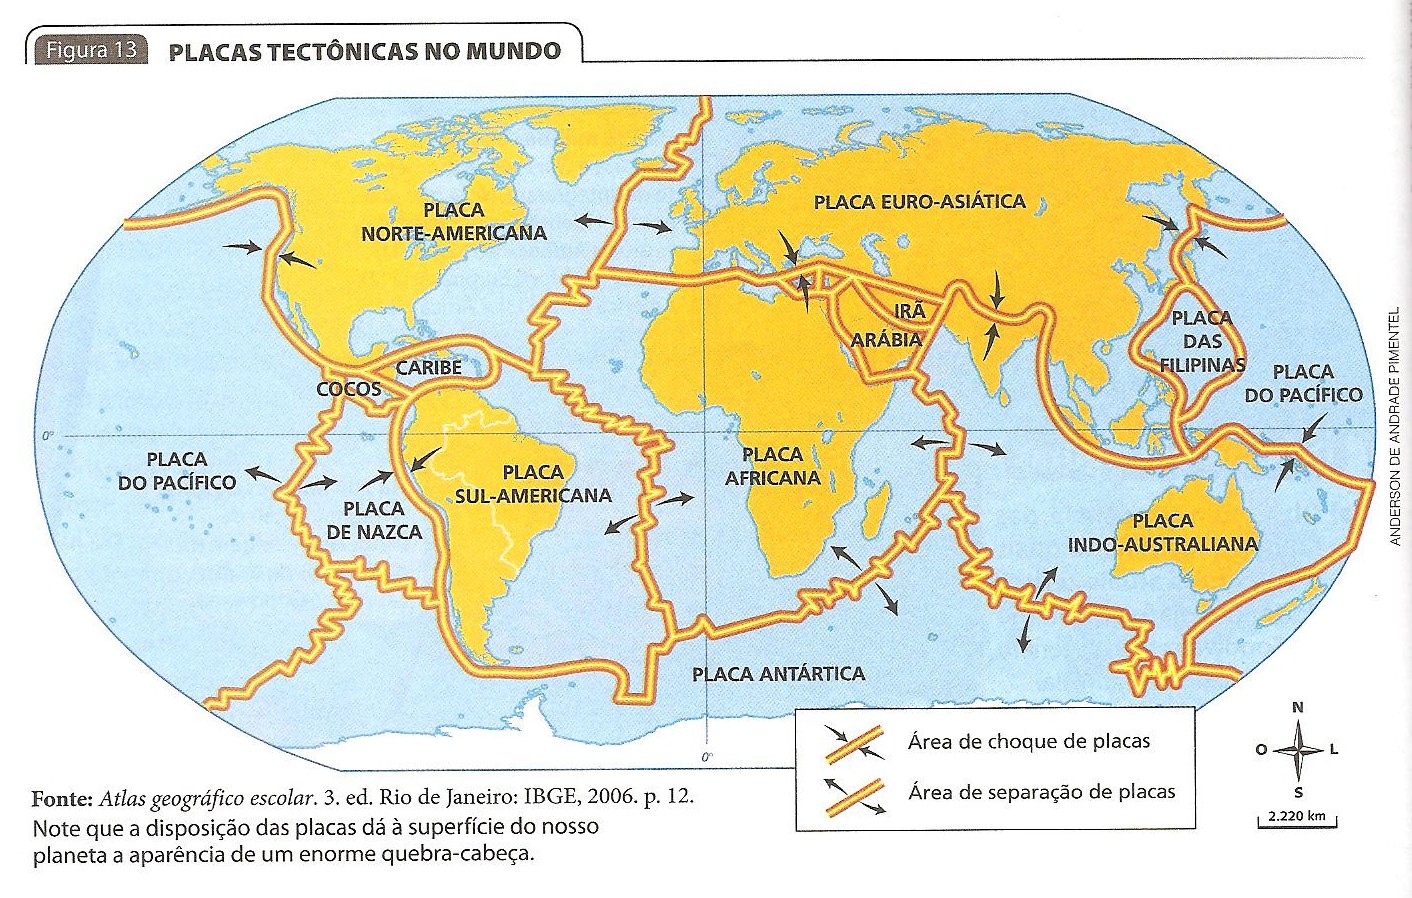 Movimiento de placas tectonicas